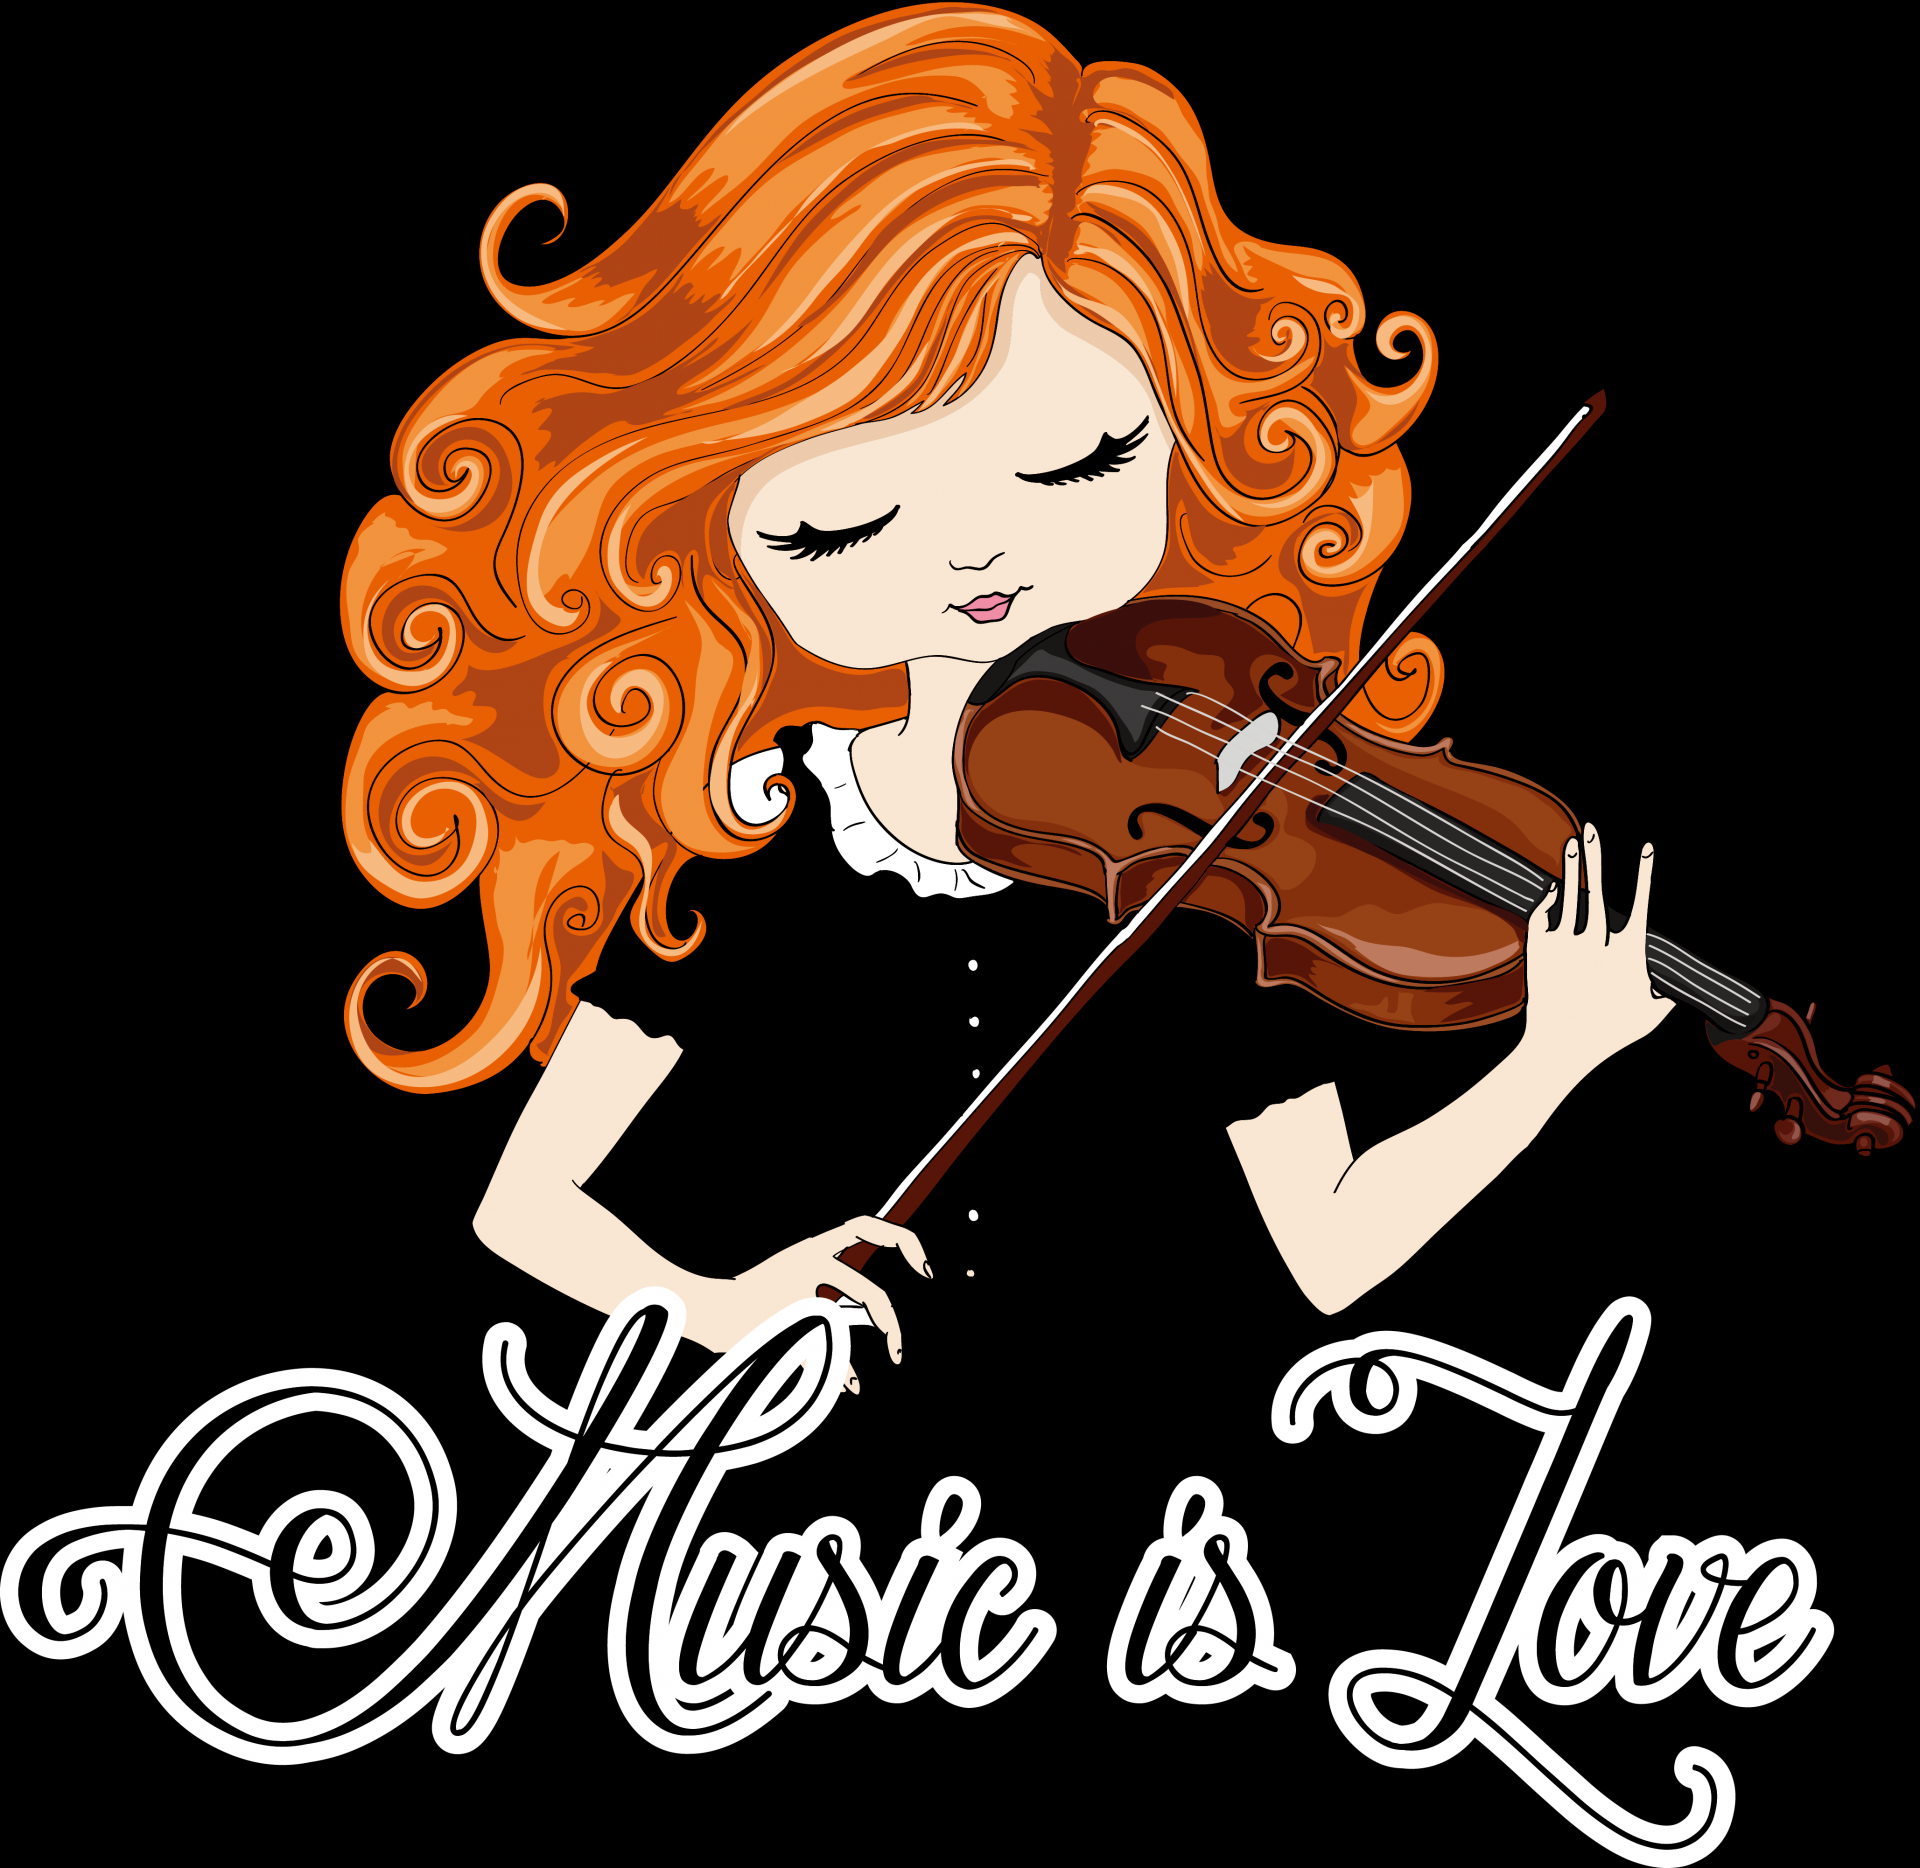 拉小提琴這樣做：小提琴音階指法與技巧分享 @
			
				張偉軒小提琴
			
		